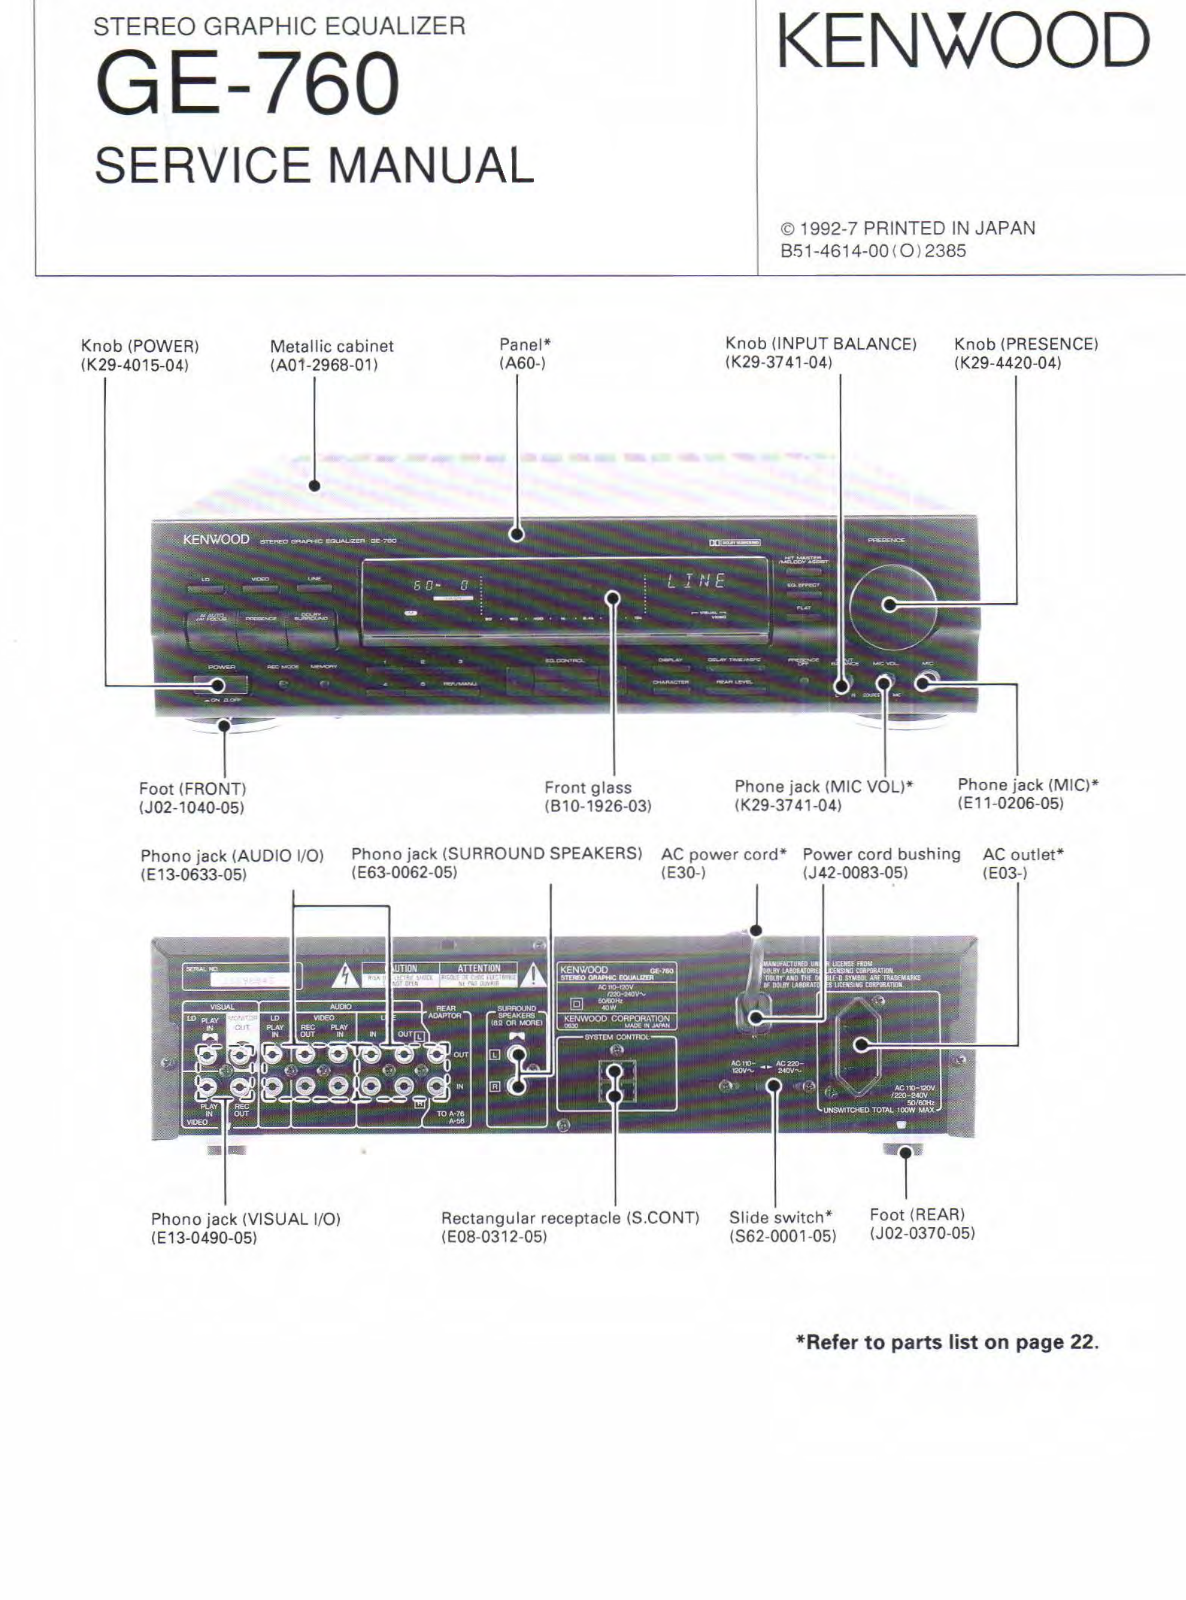 Kenwood GE-760 Service Manual